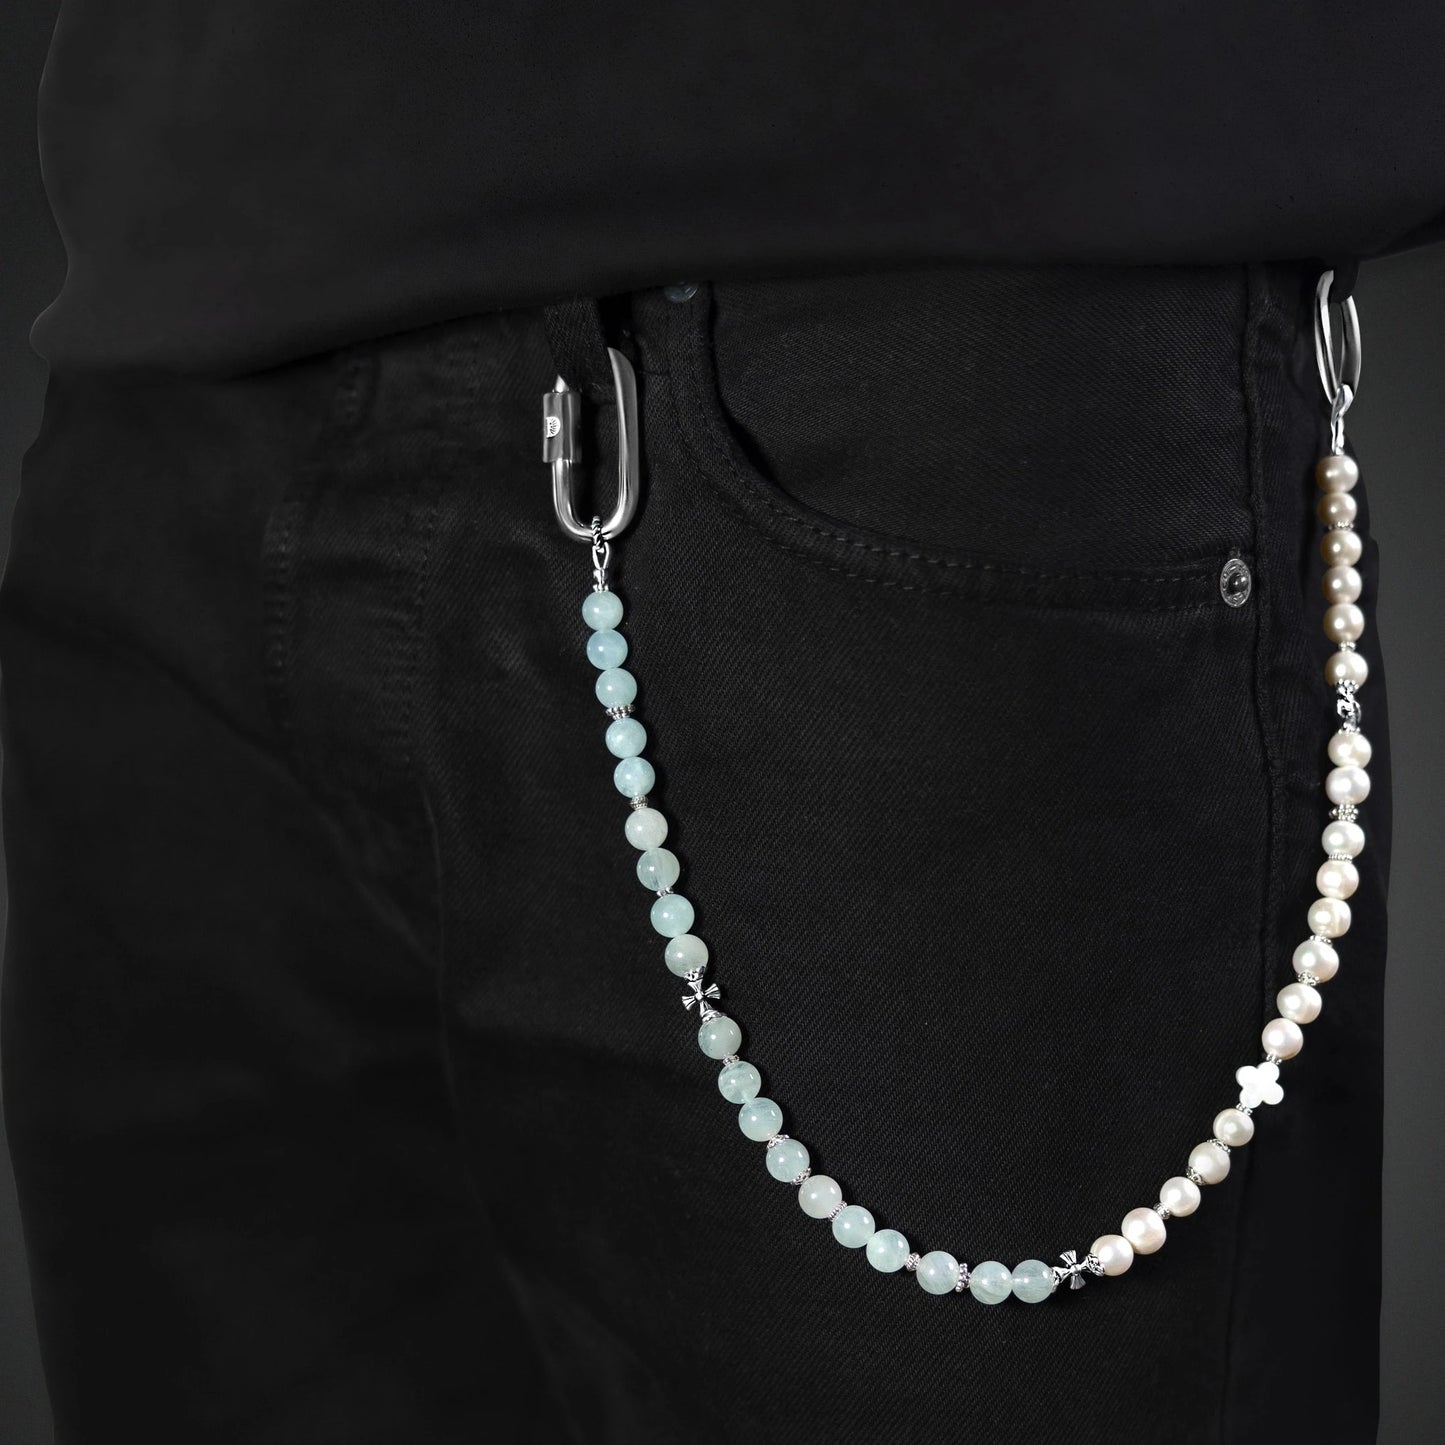 Chaîne de pantalon en perles pour homme et femme de luxe, perles naturelles de culture, perles d'eau douce, pierres fines et argent 925. Tendance et luxueux.